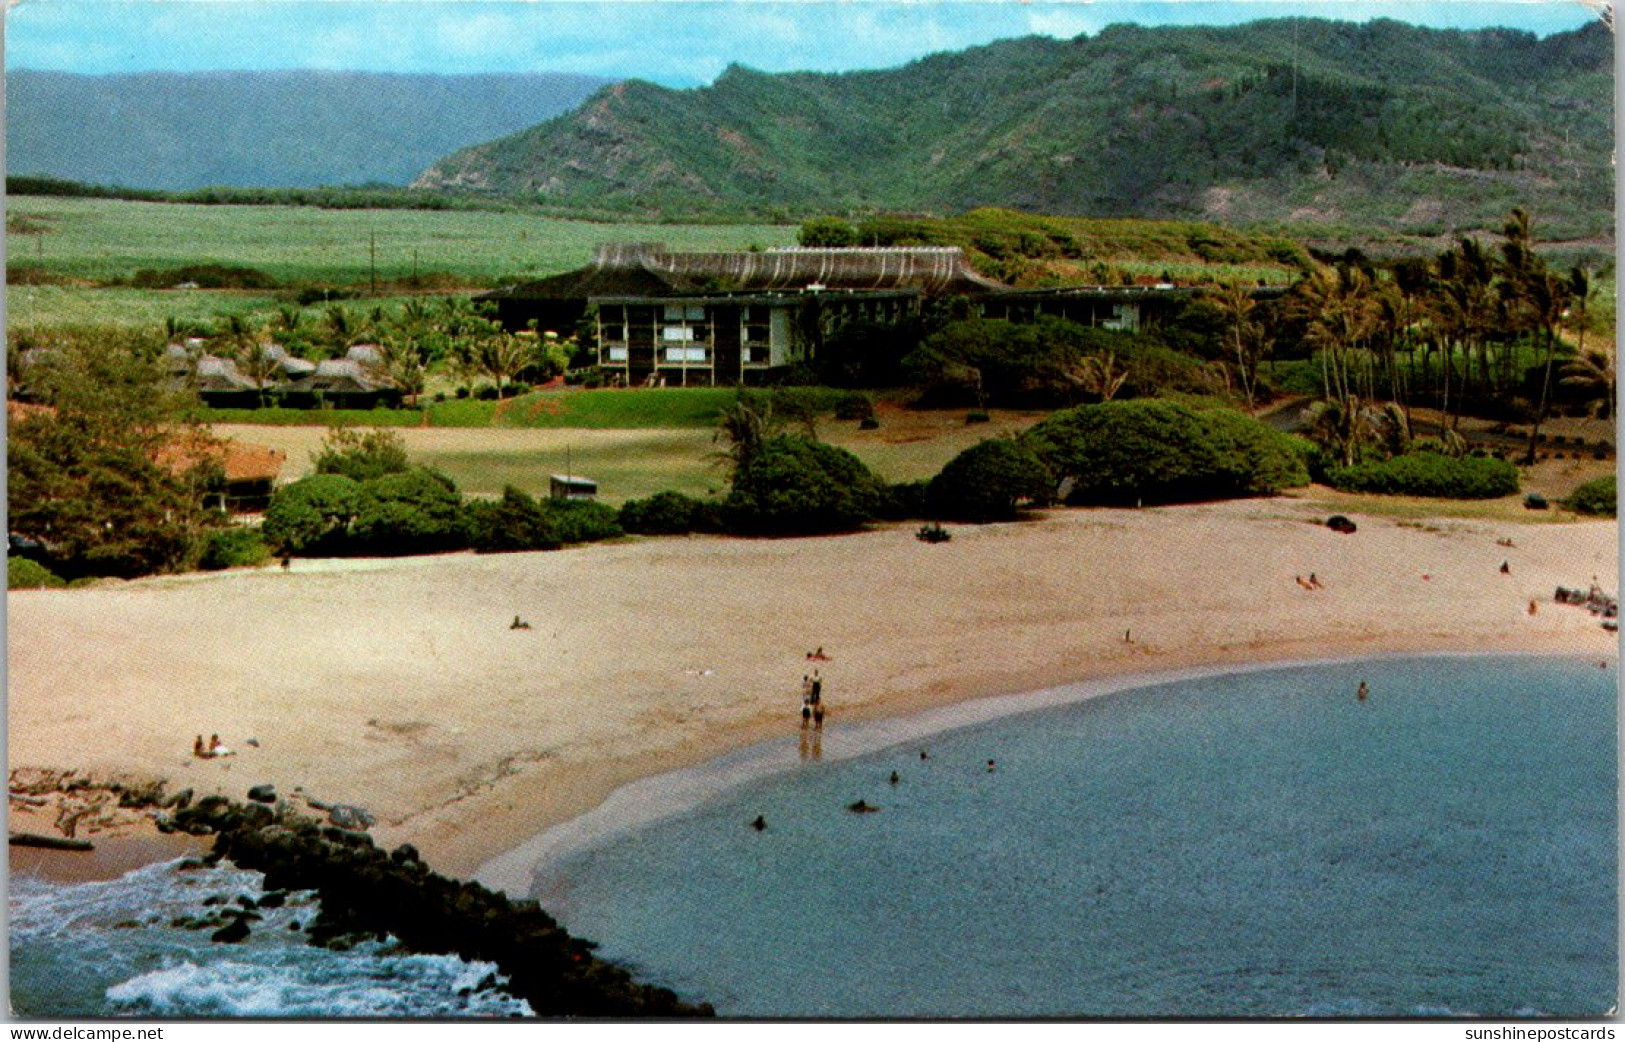 Hawaii Kauai The Kauai Resort Hotel - Kauai